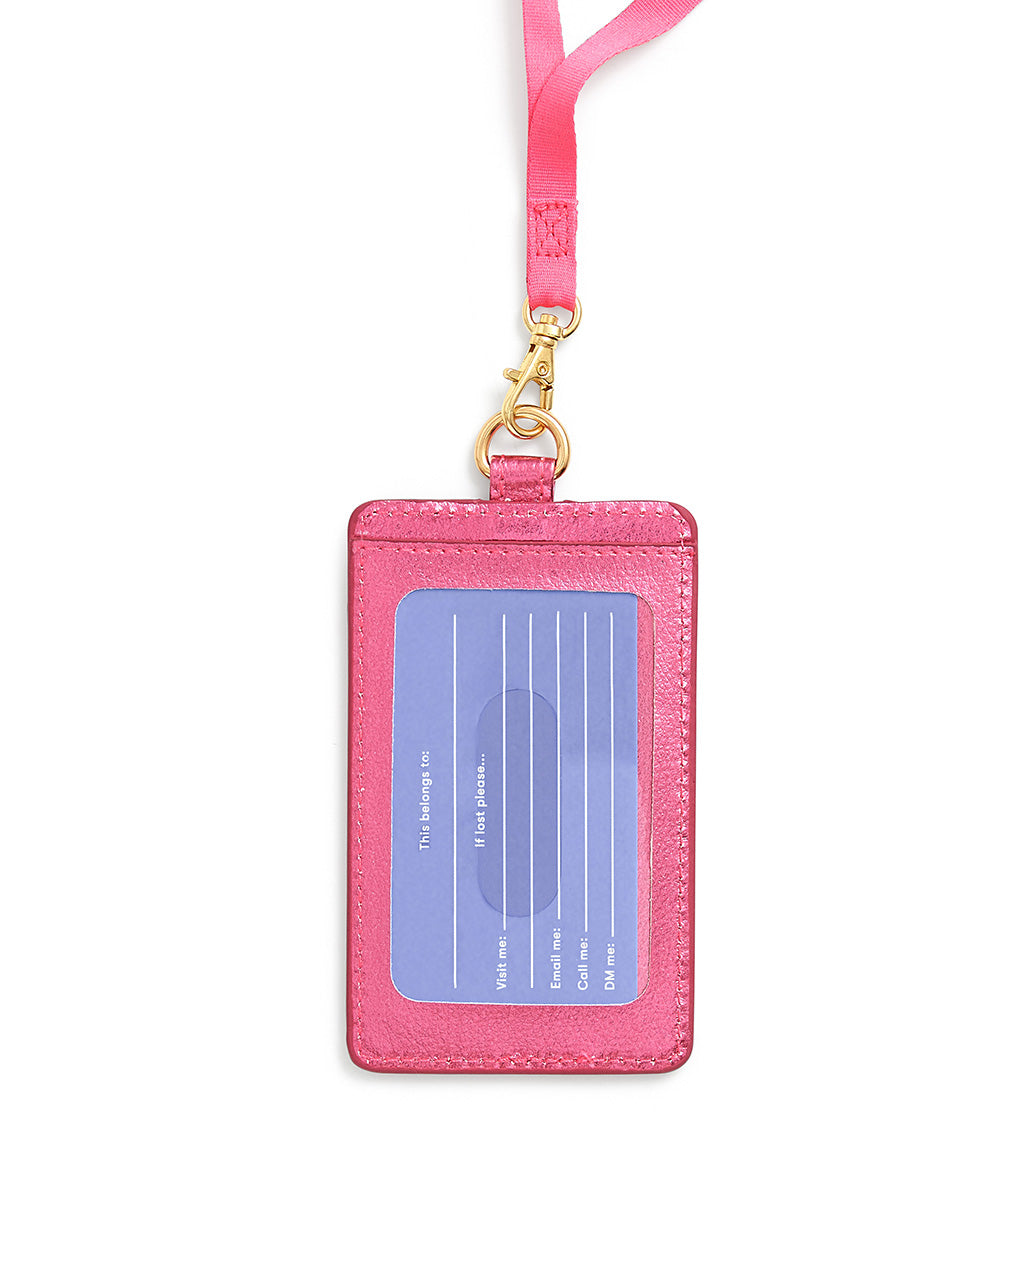 Keep It Close Card Case with Lanyard - Metallic Pink